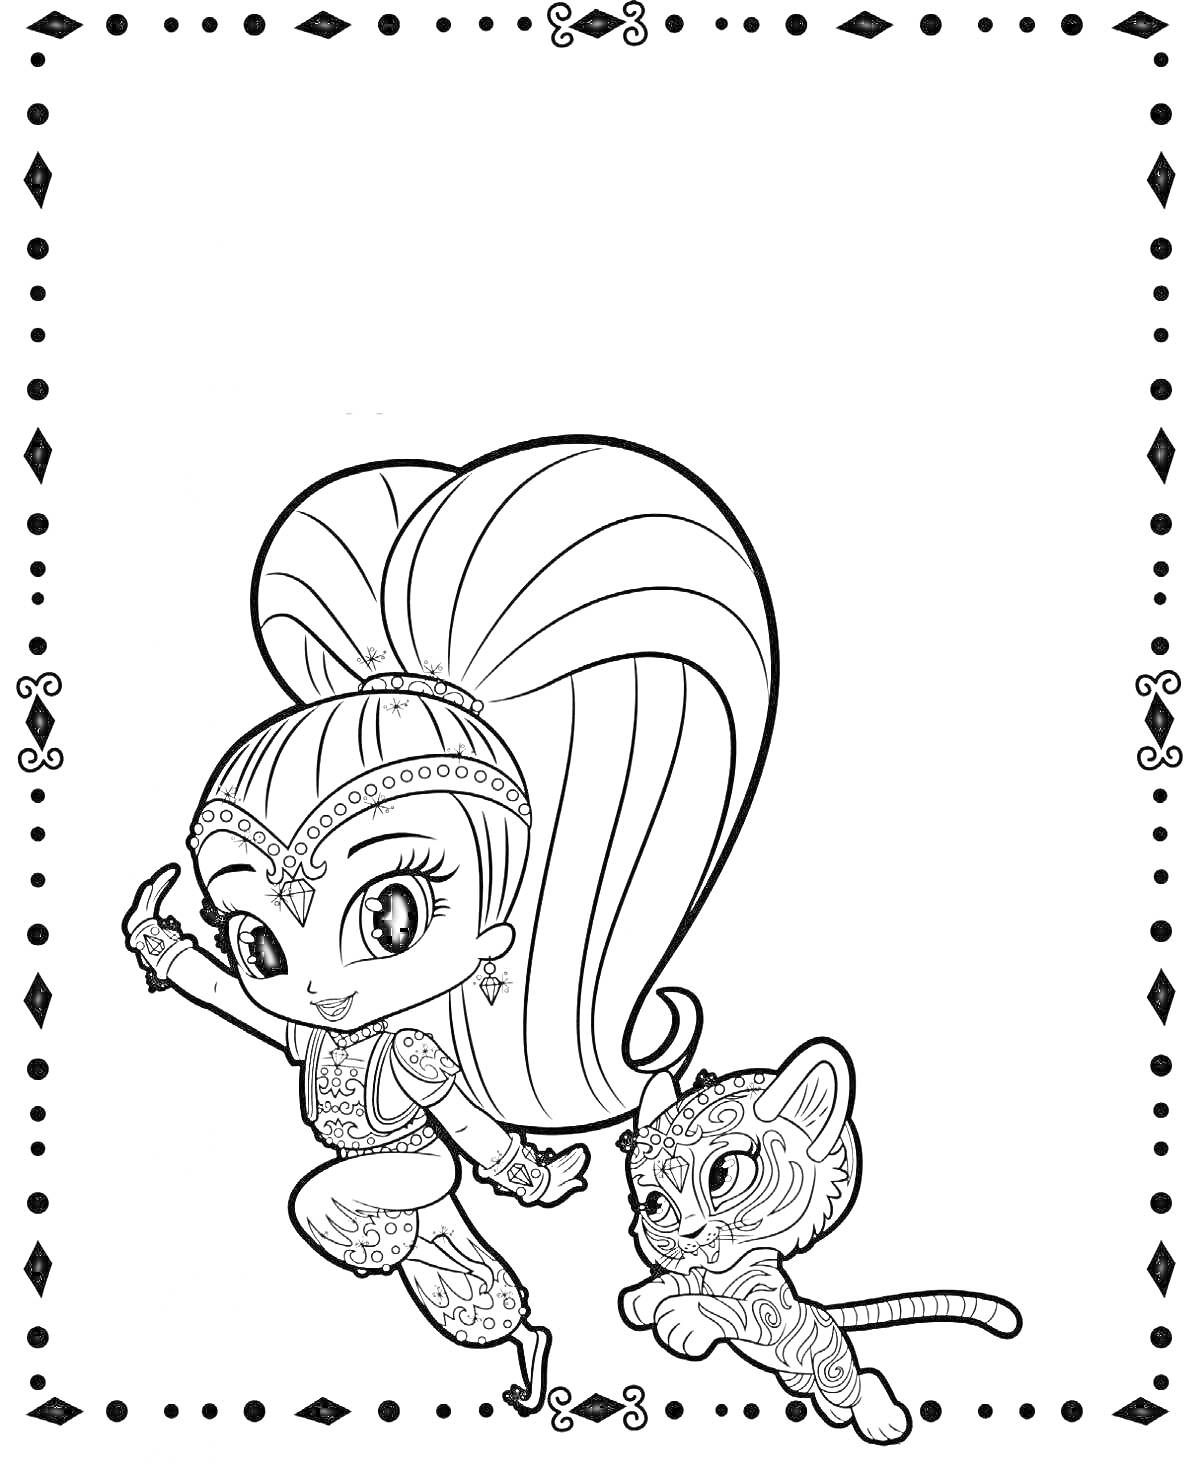 Раскраска Девочка с длинными волосами в восточном костюме и тигренок, обрамленные узором из ромбов и точек